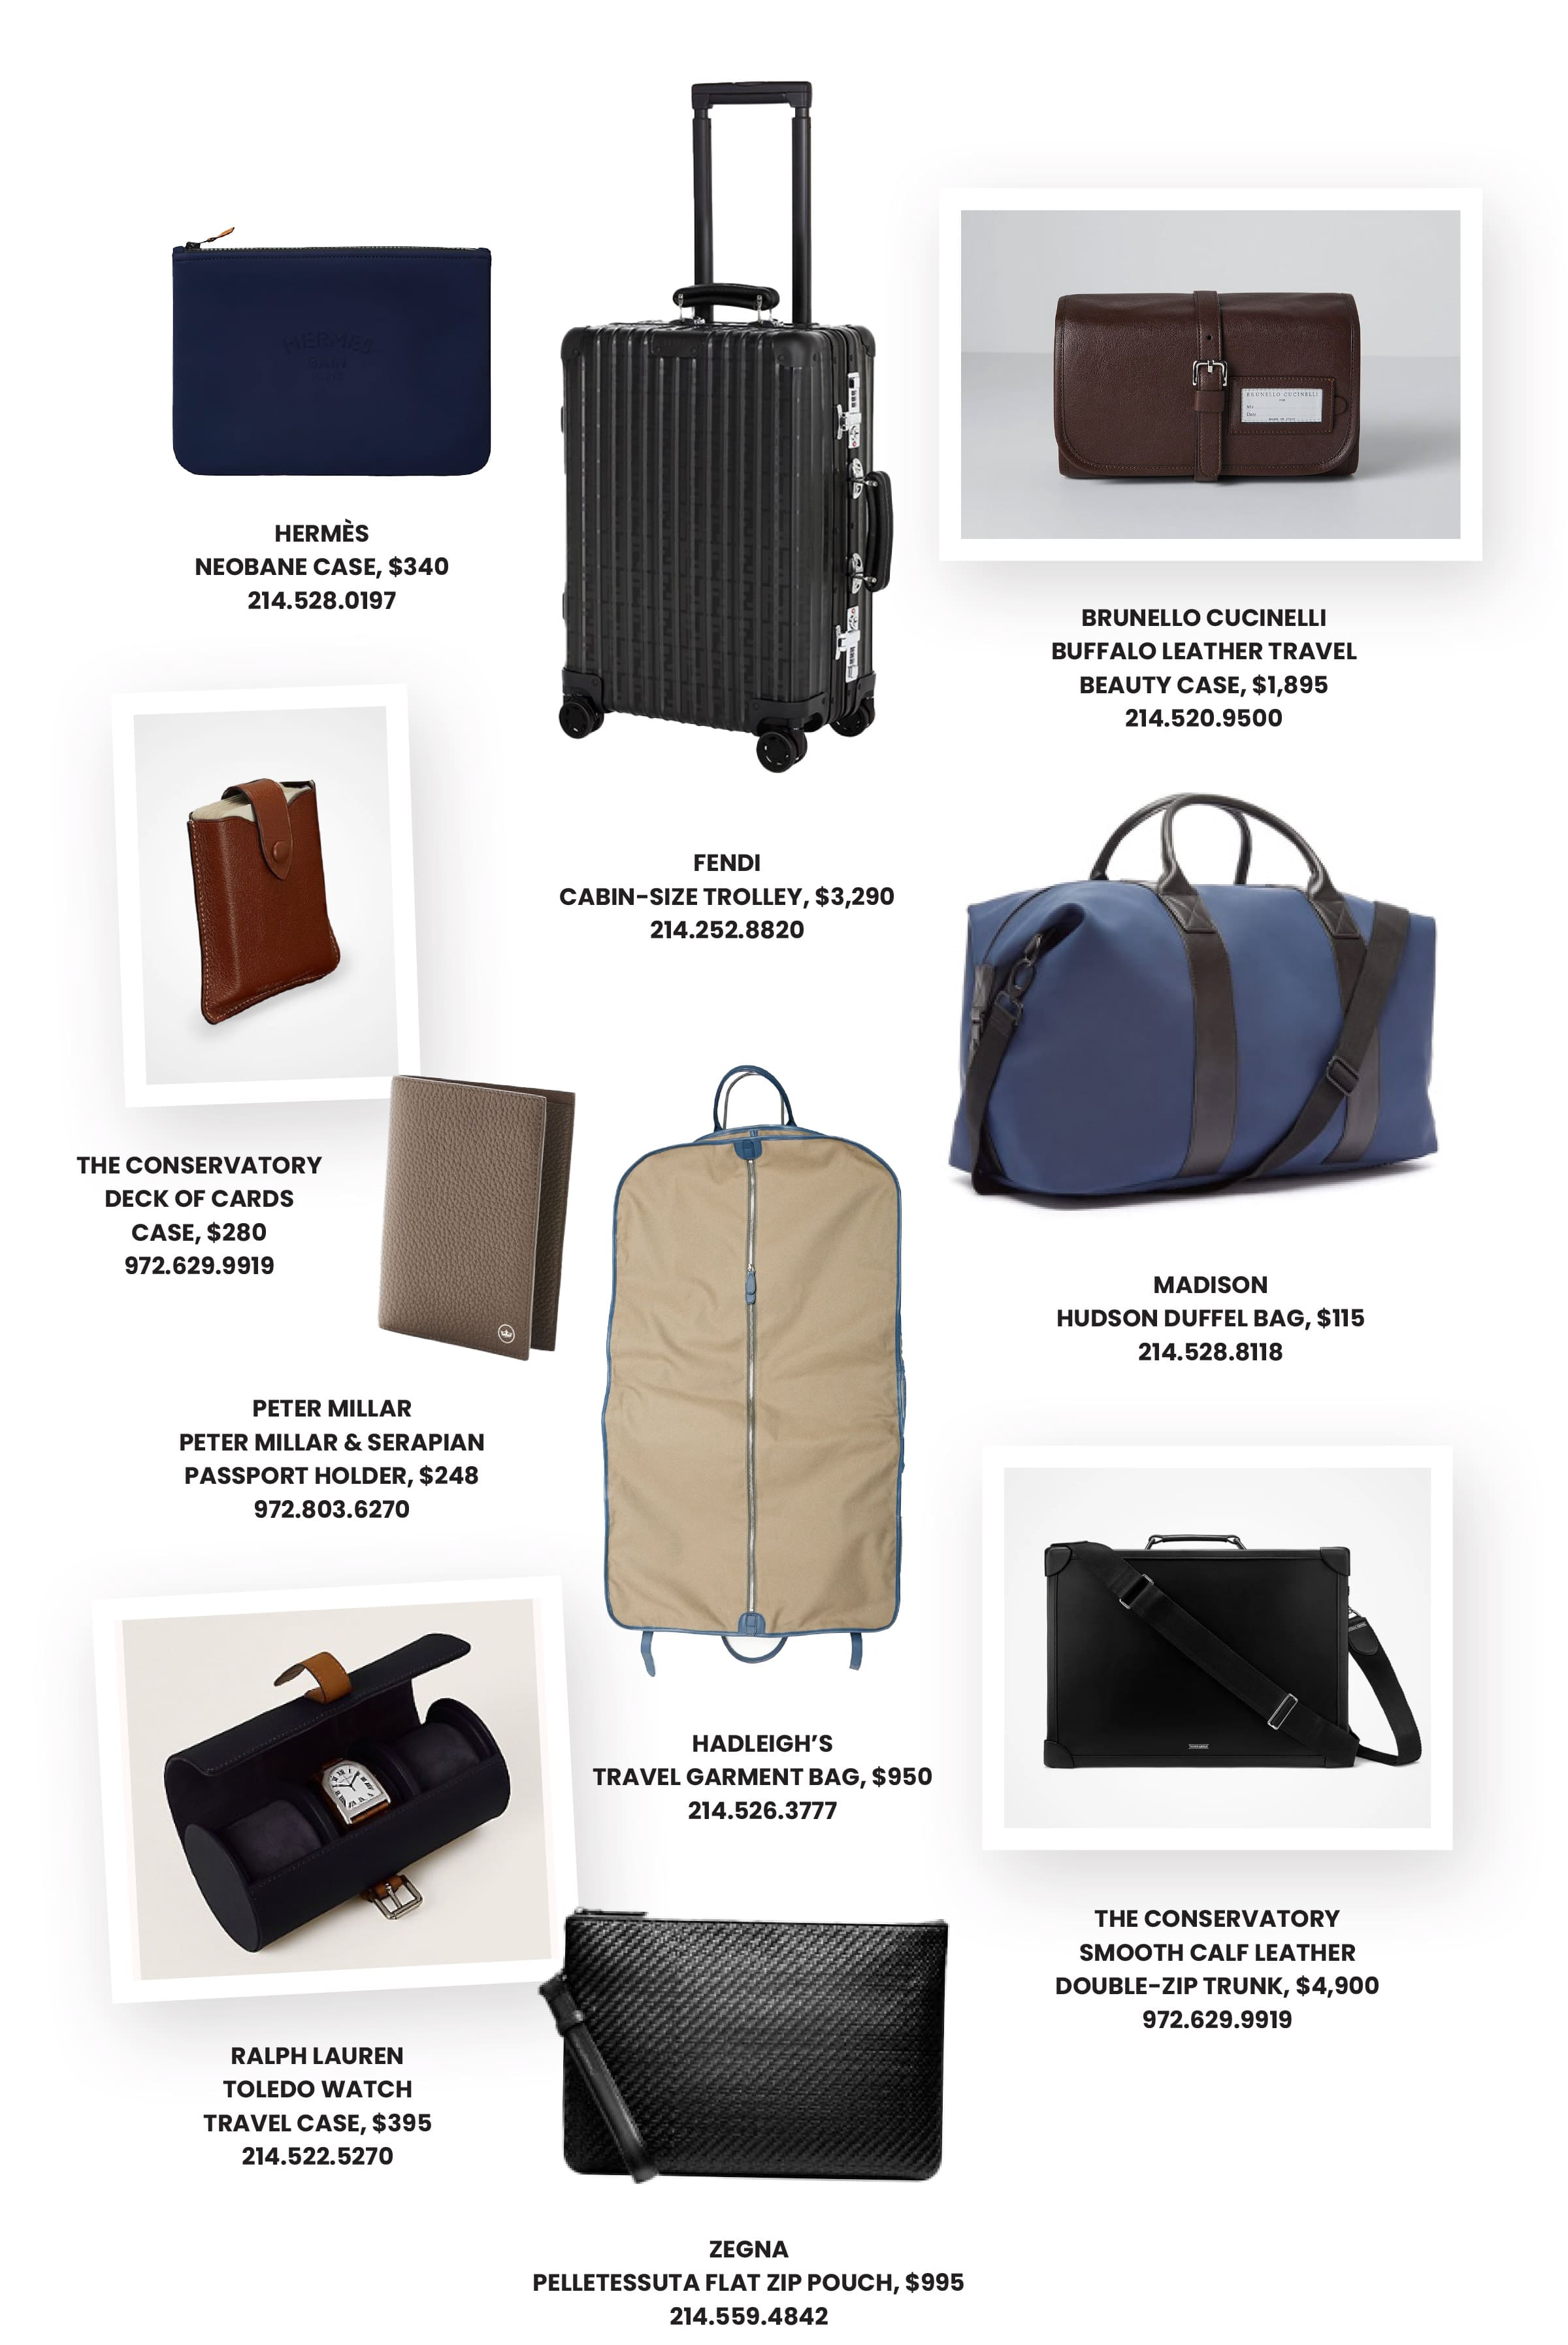 Básicos de viaje para él con una maleta Fendi, un portatrajes de Hadleigh, una bolsa de lona de diseño y una funda para pasaporte de Peter Millar.